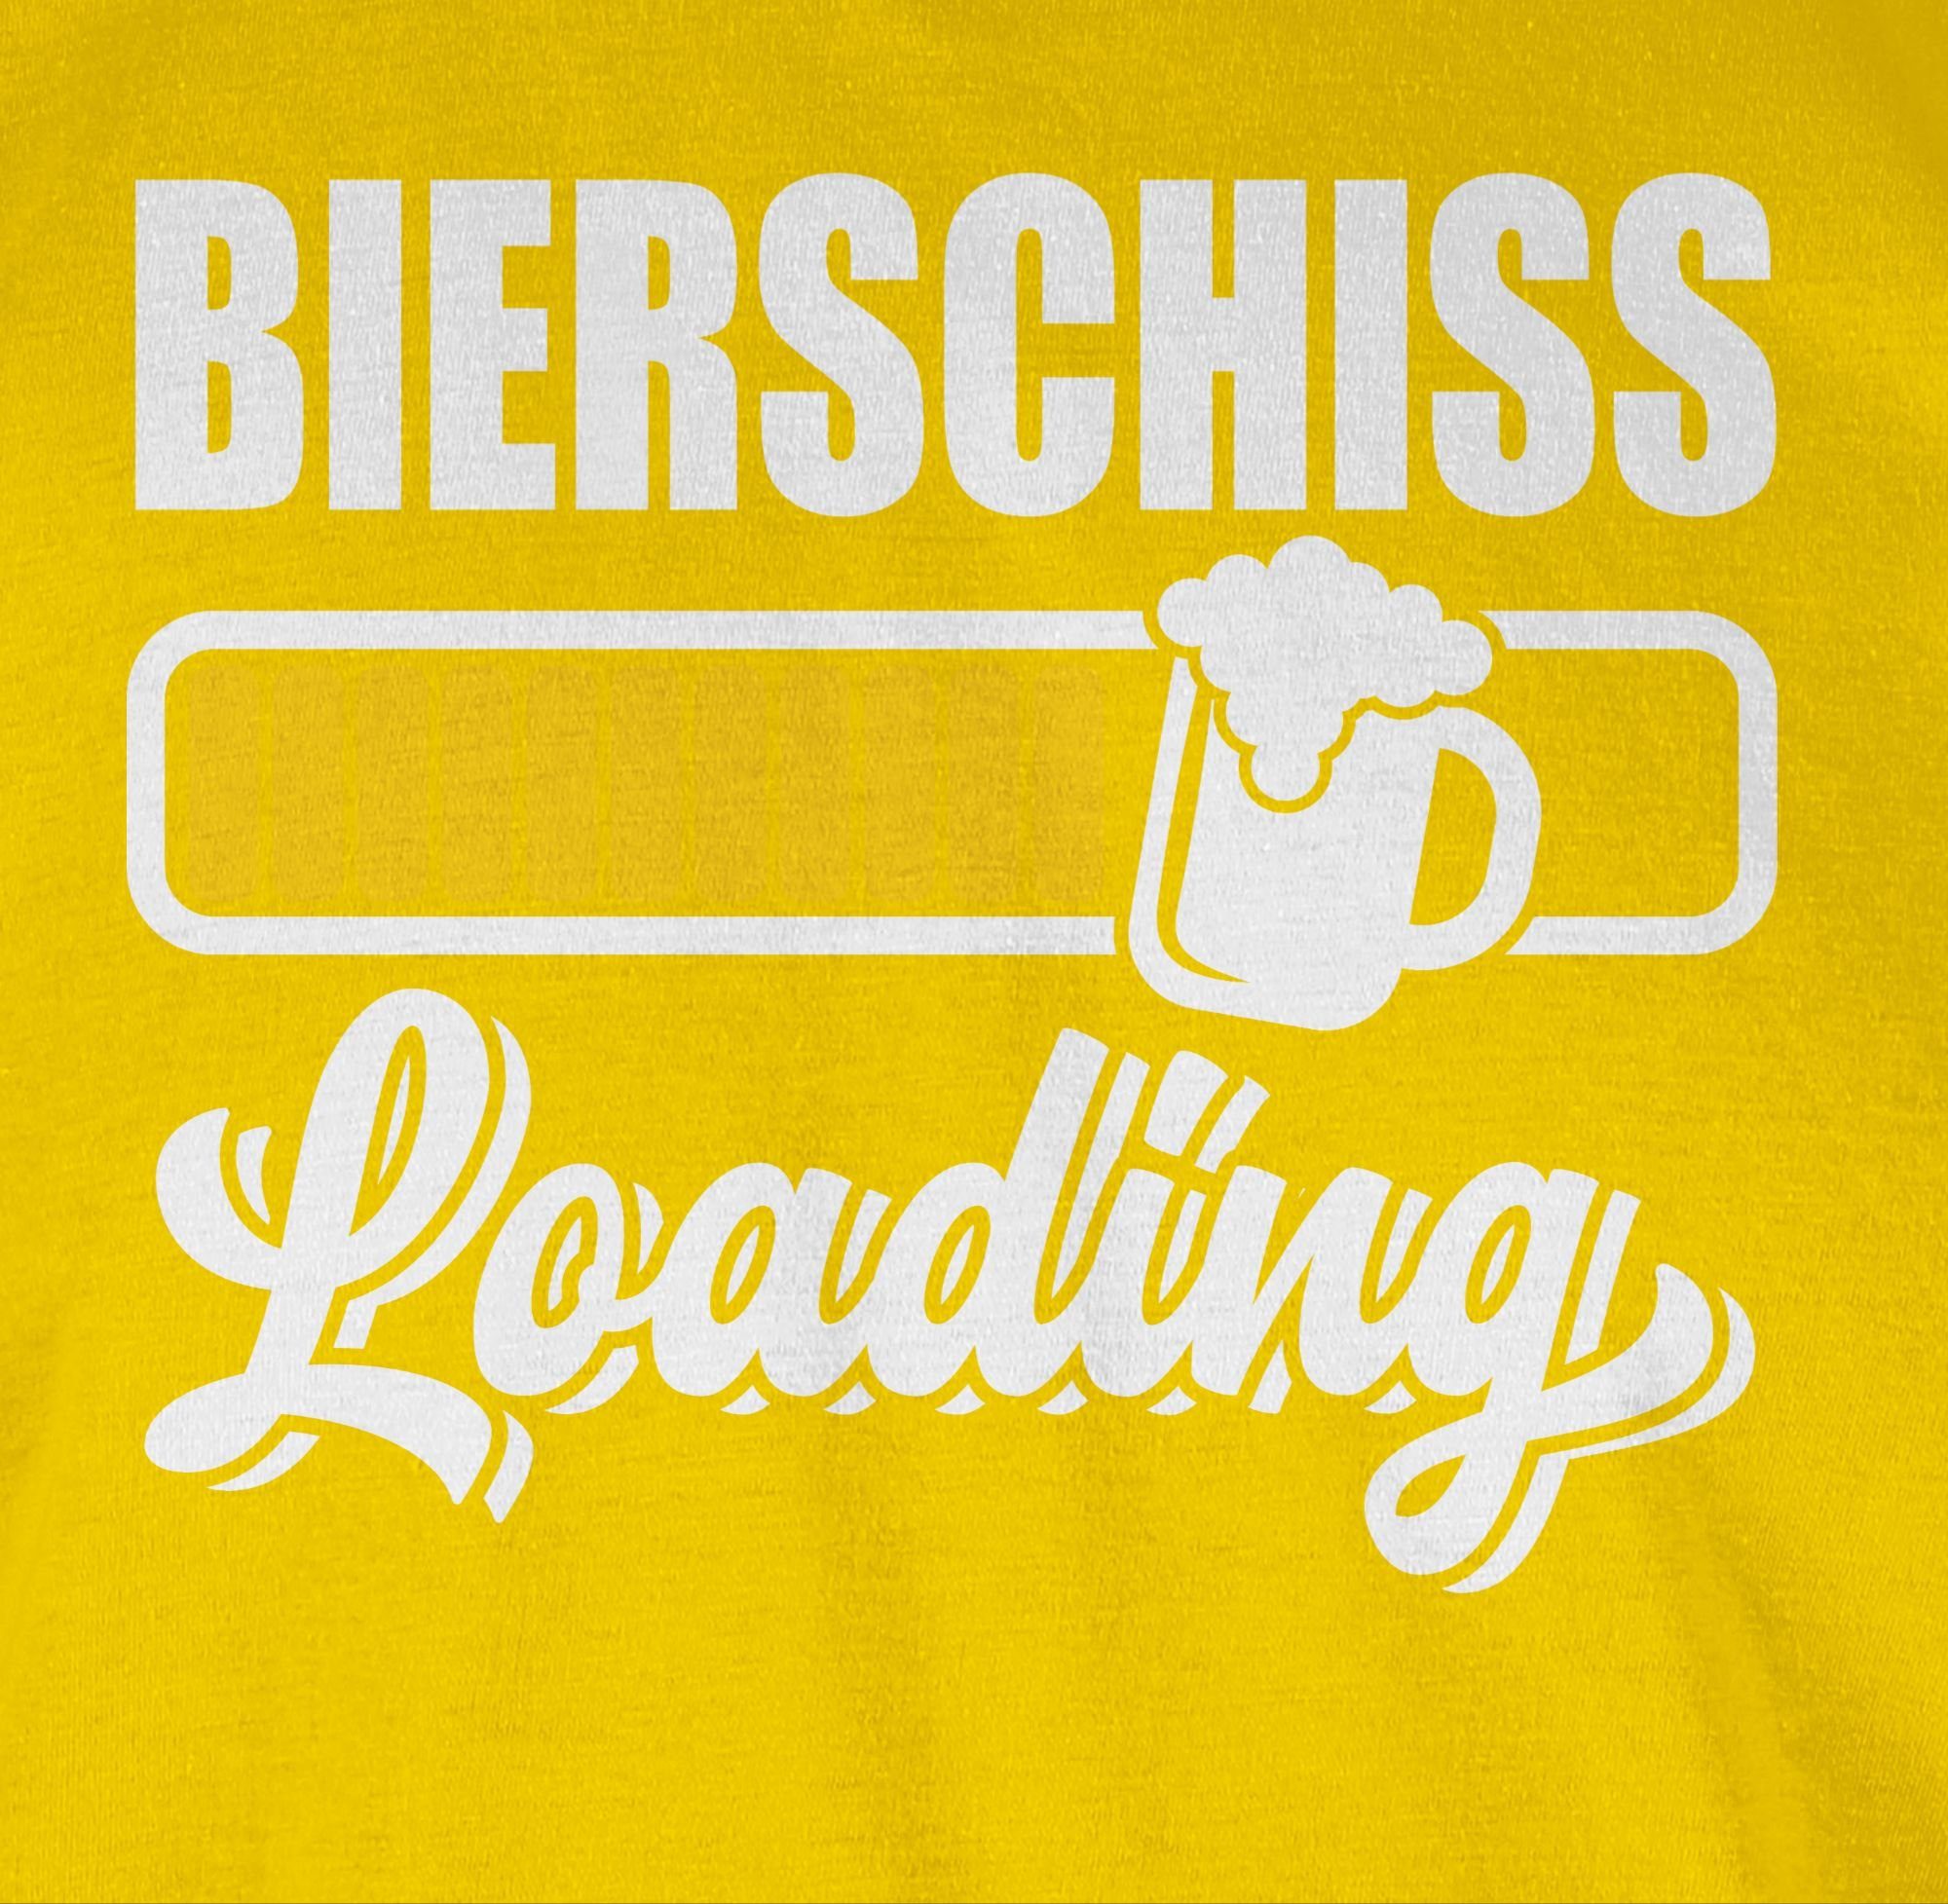 Karneval loading 3 Gelb Outfit T-Shirt Shirtracer Bierschiss